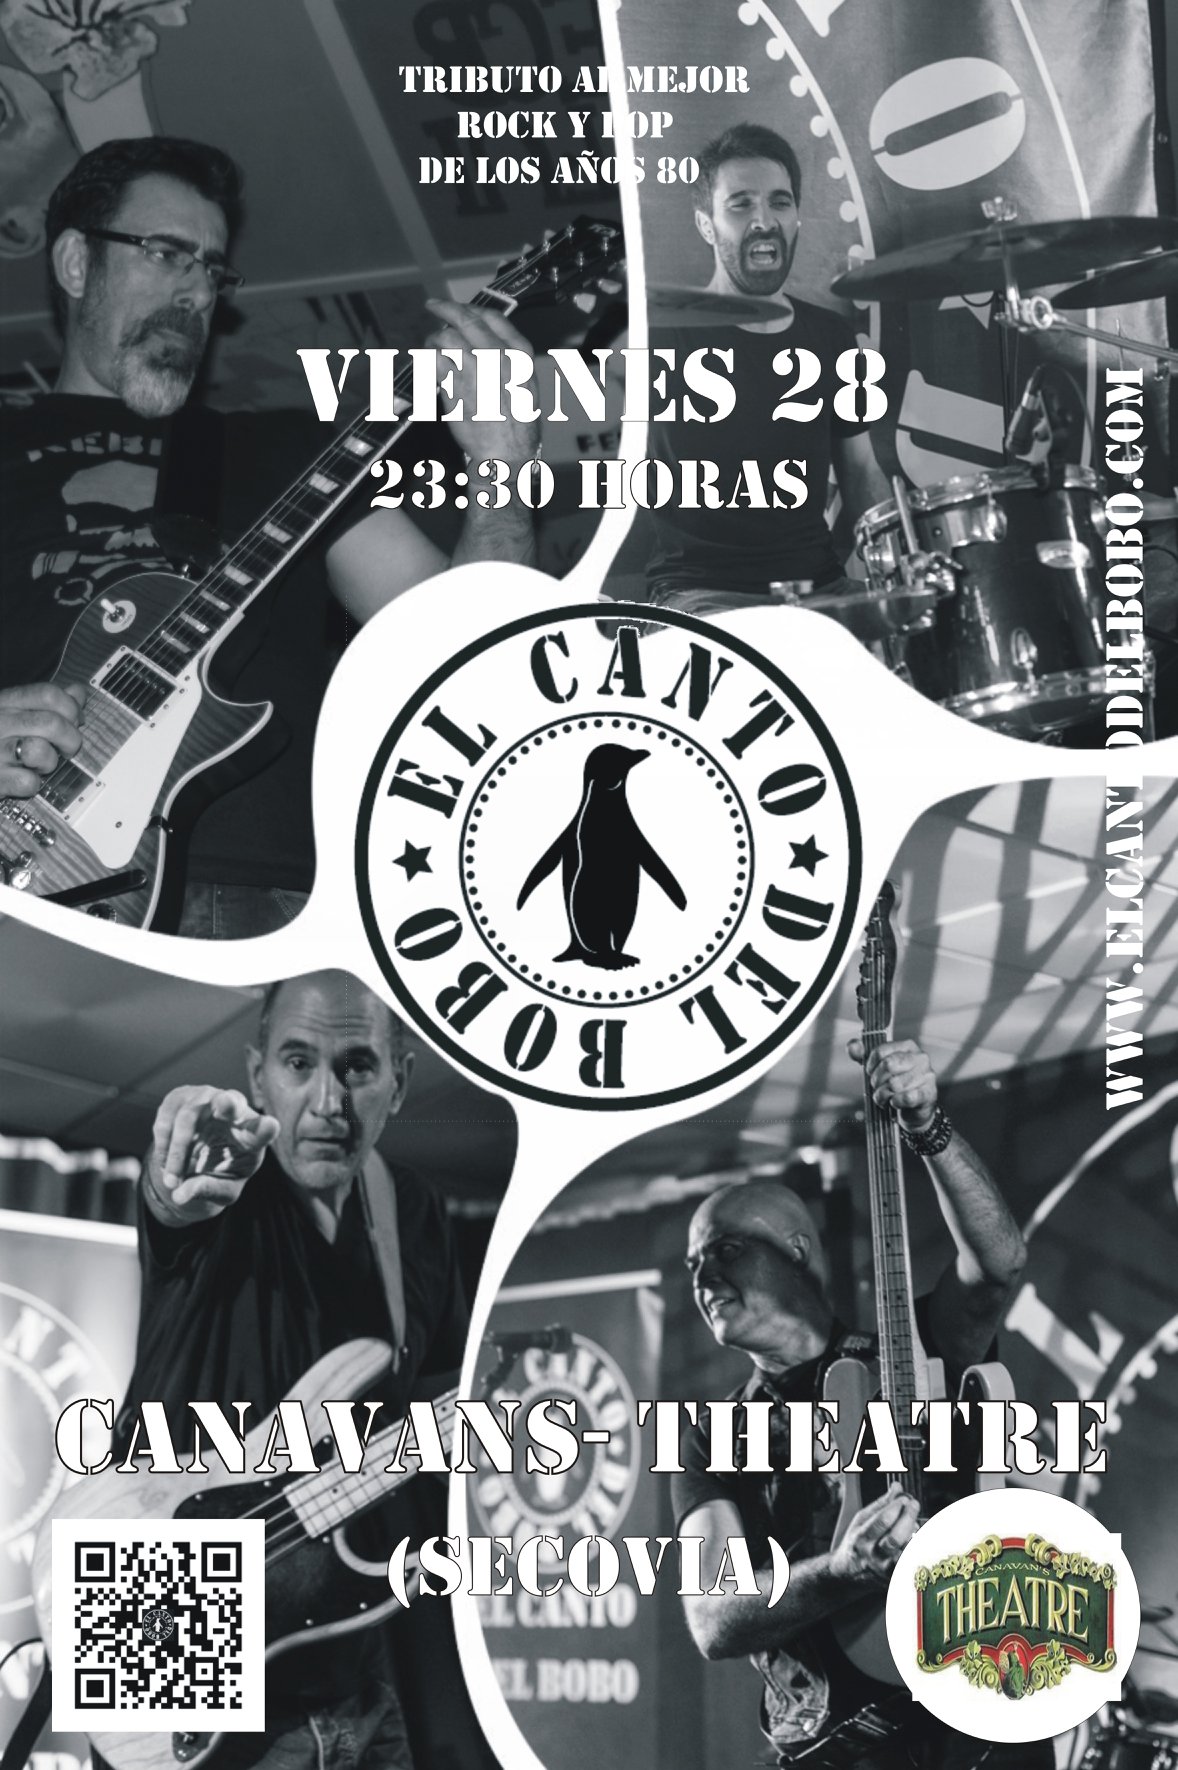 El Canto del Bobo en Canavans-Theatre Segovia